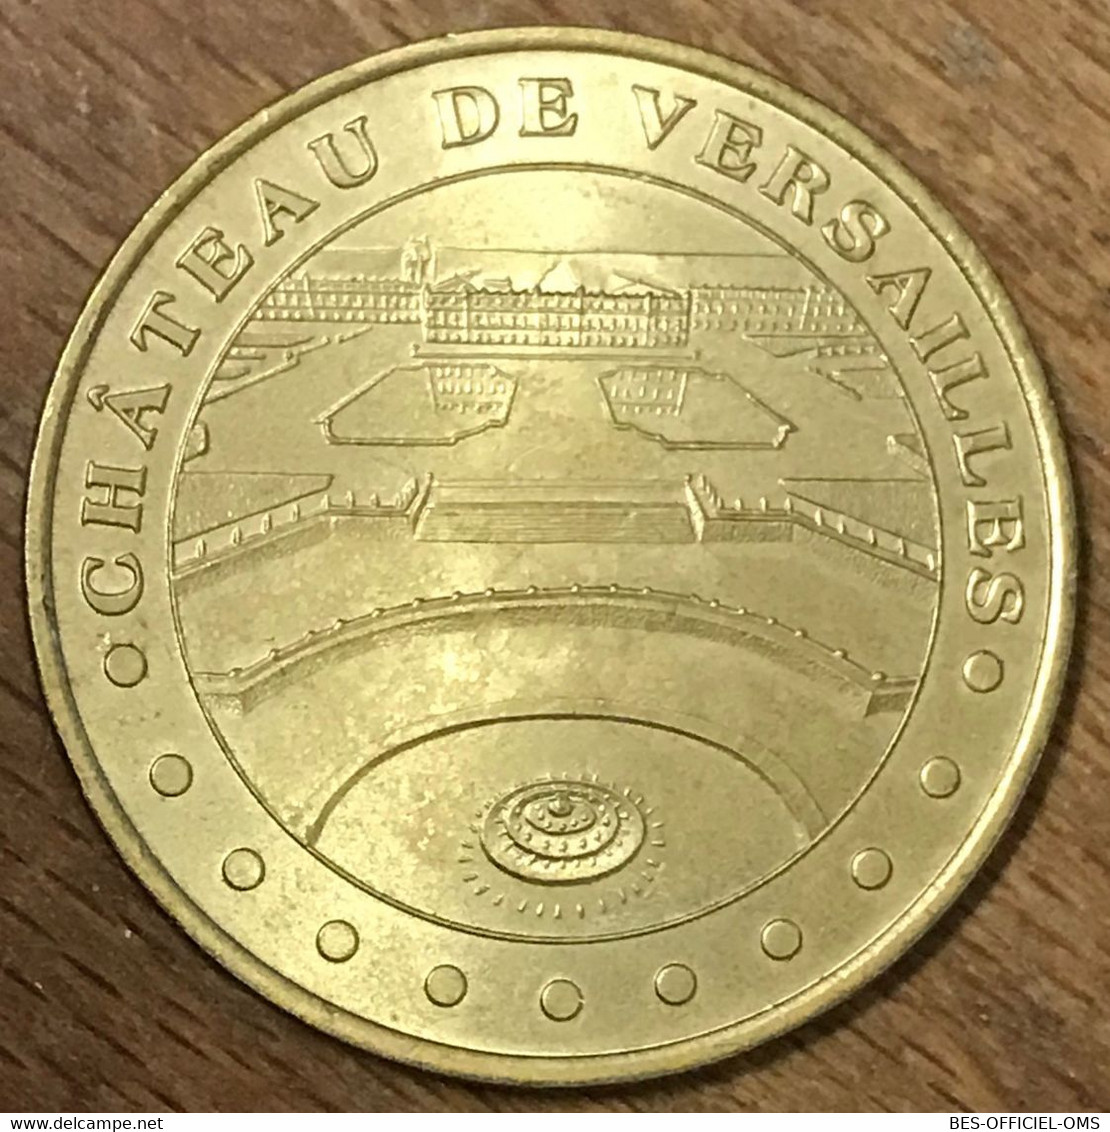 78 CHÂTEAU DE VERSAILLES MDP 2001 MÉDAILLE SOUVENIR MONNAIE DE PARIS JETON TOURISTIQUE MEDALS COINS TOKENS - 2001